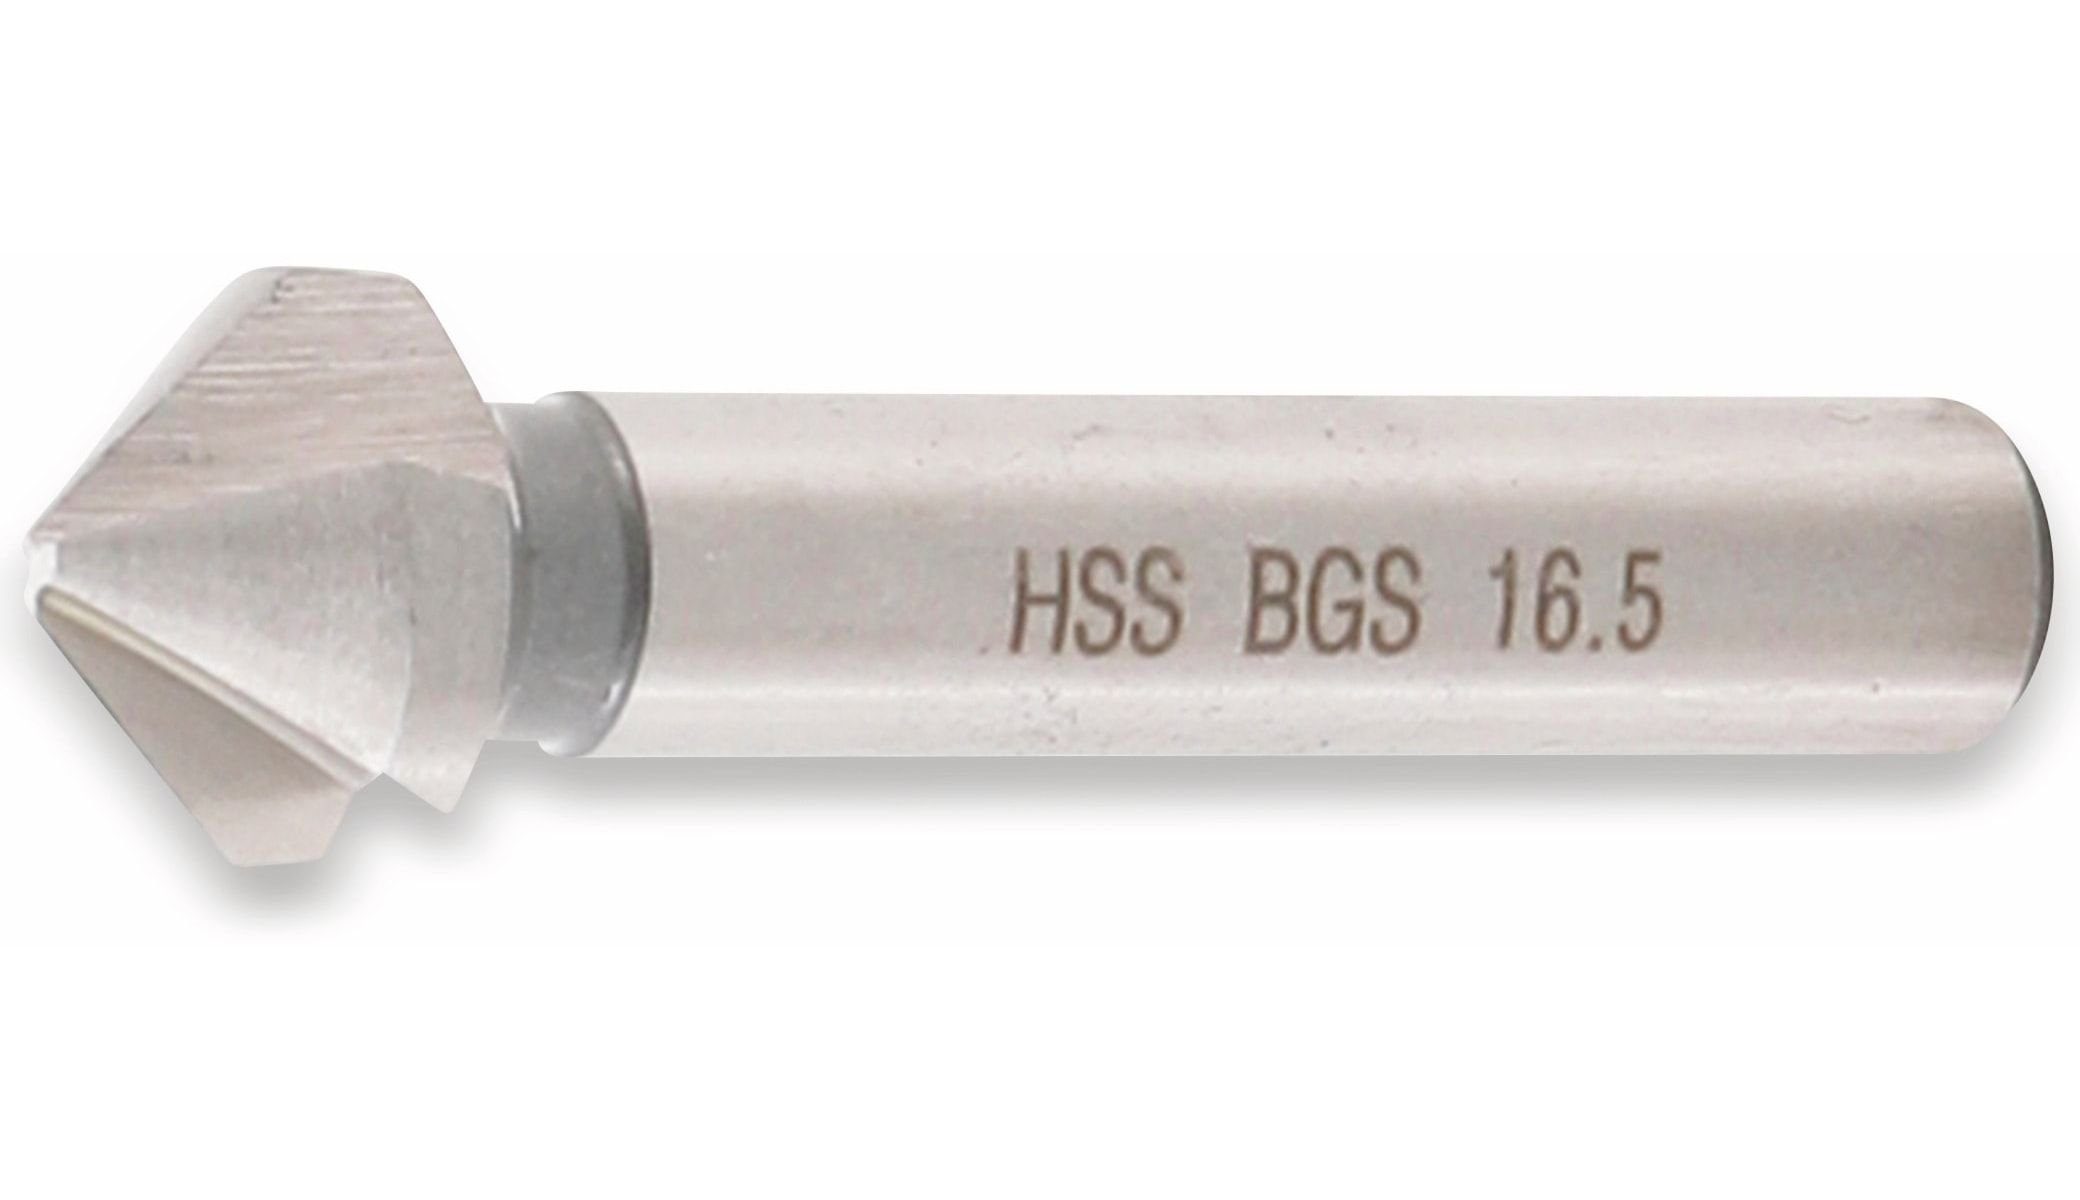 BGS technic HSS Universalbohrer TECHNIC BGS DIN 16,5 Ø 335 Kegelsenker mm Form